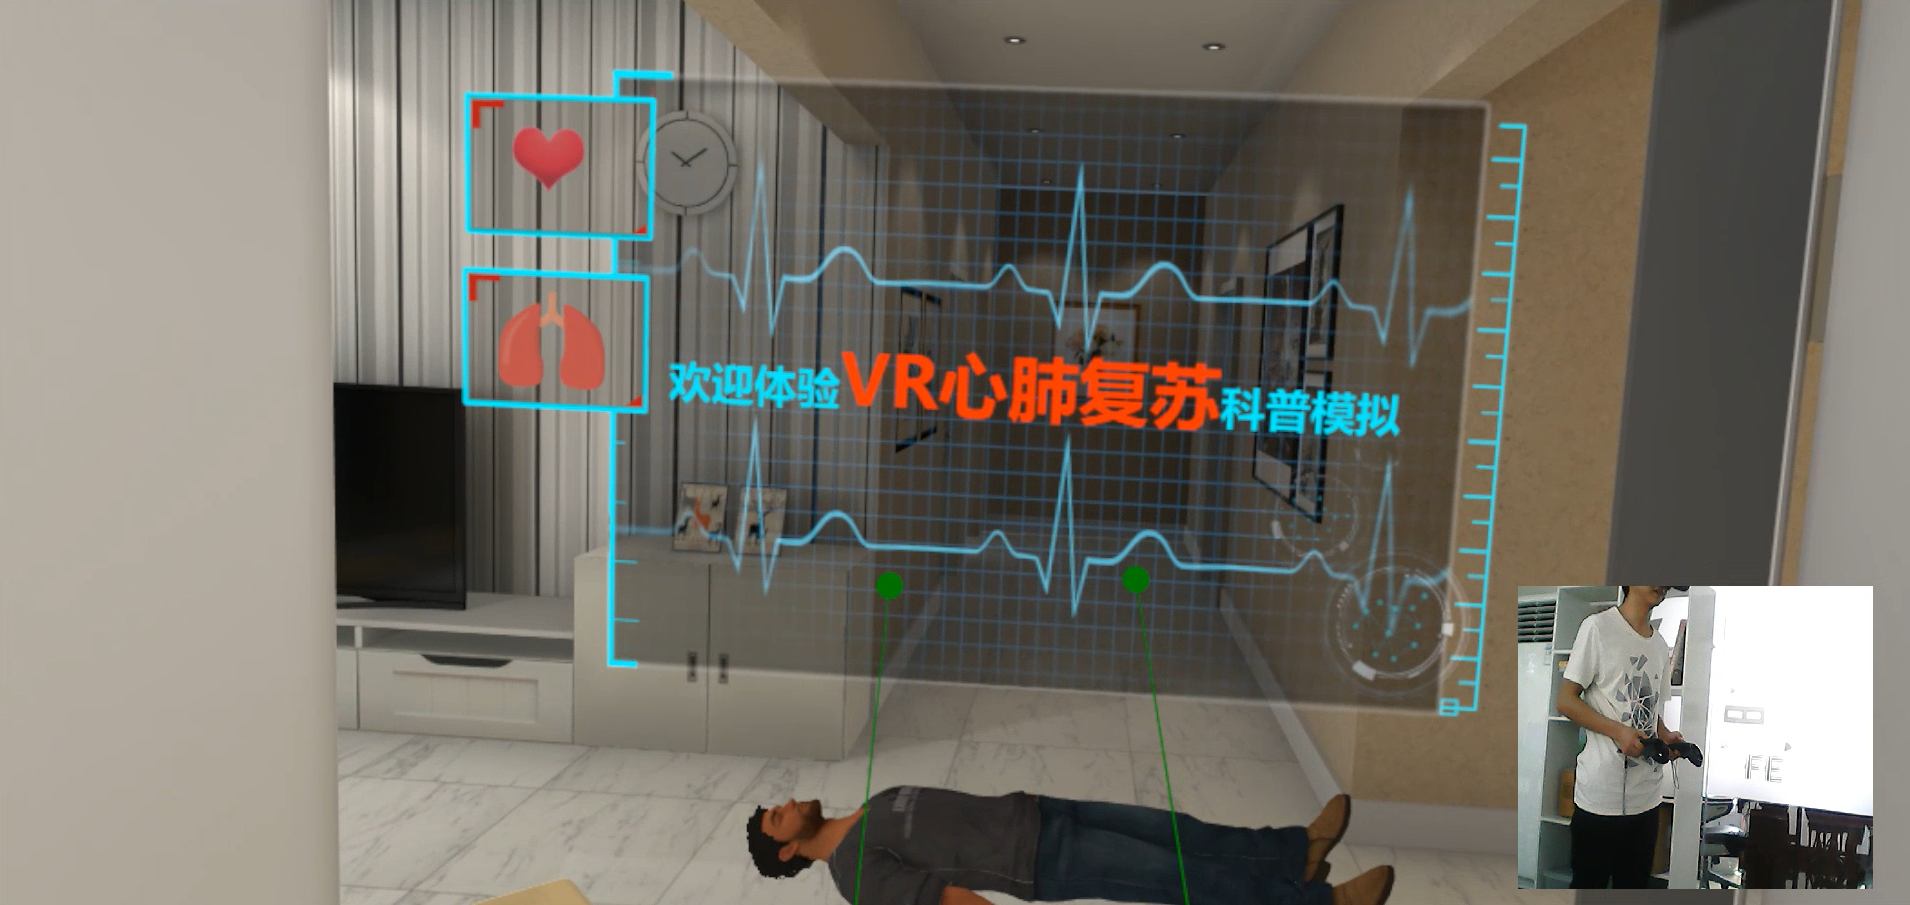 VR心肺复苏、VR心肺复苏模拟、VR医学护理